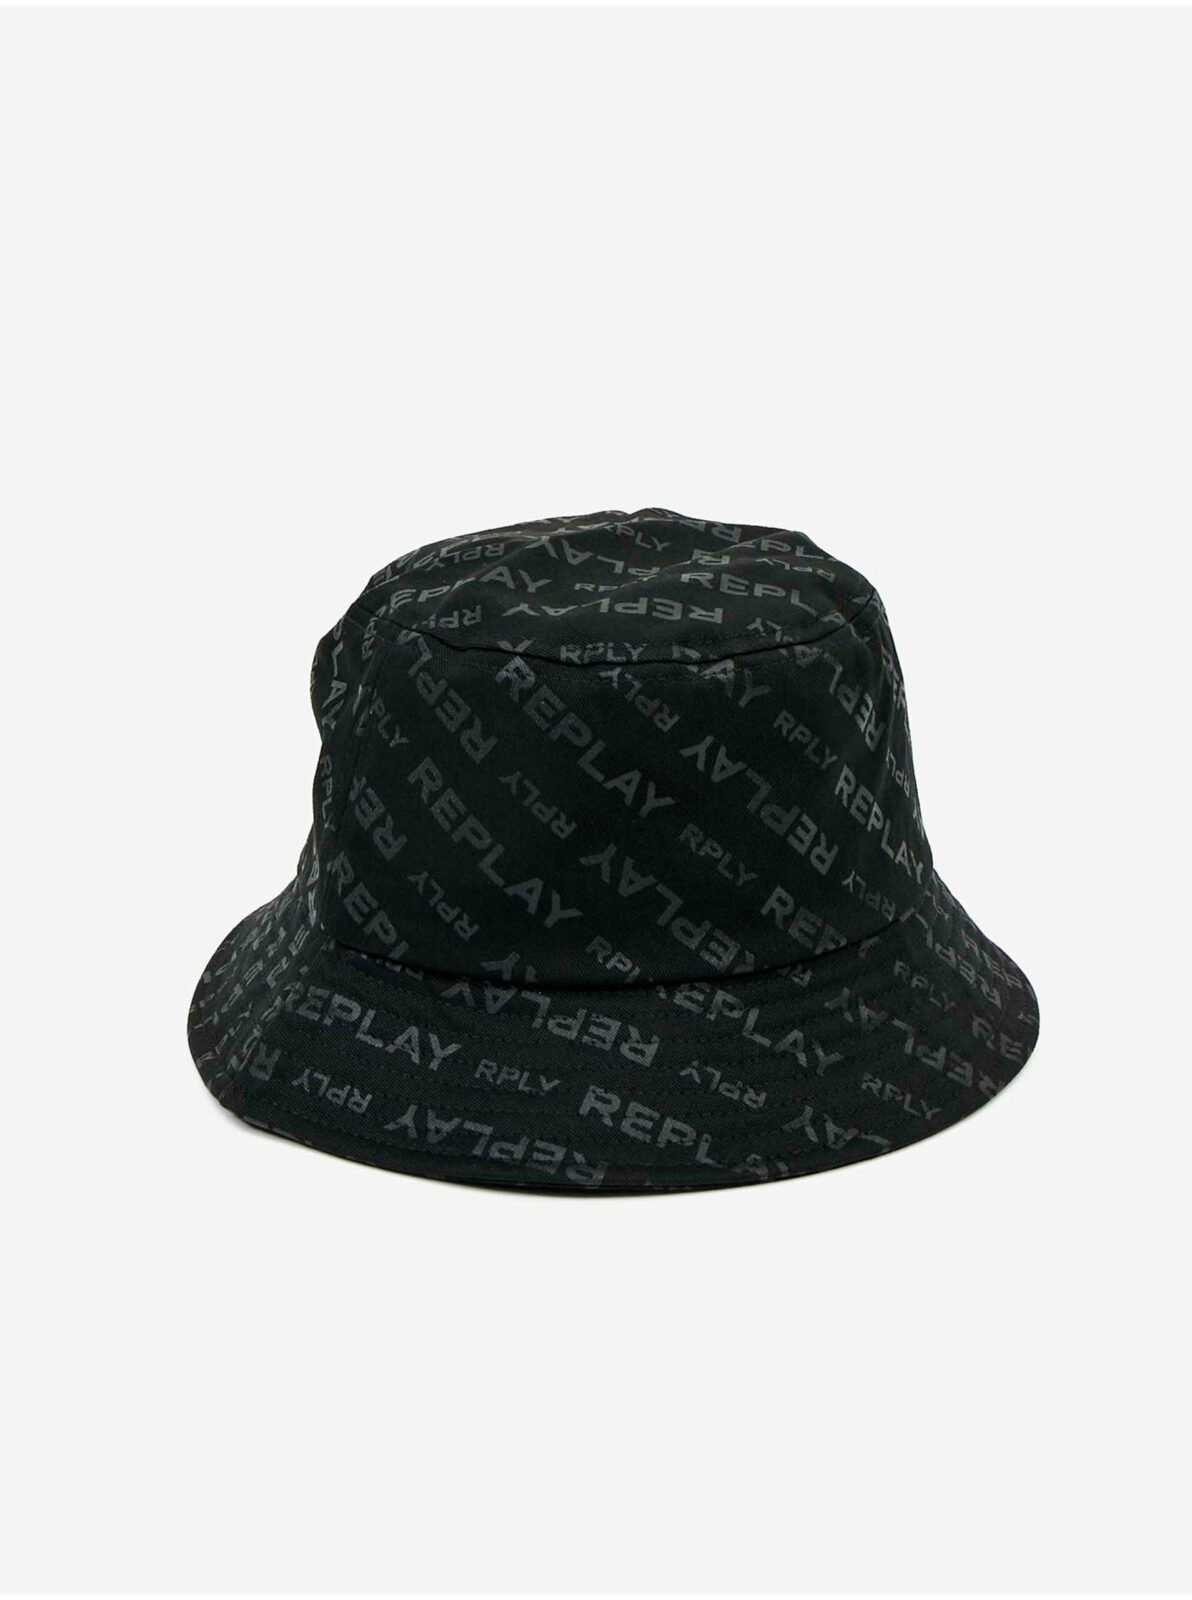 Černý pánský klobouk s motivem